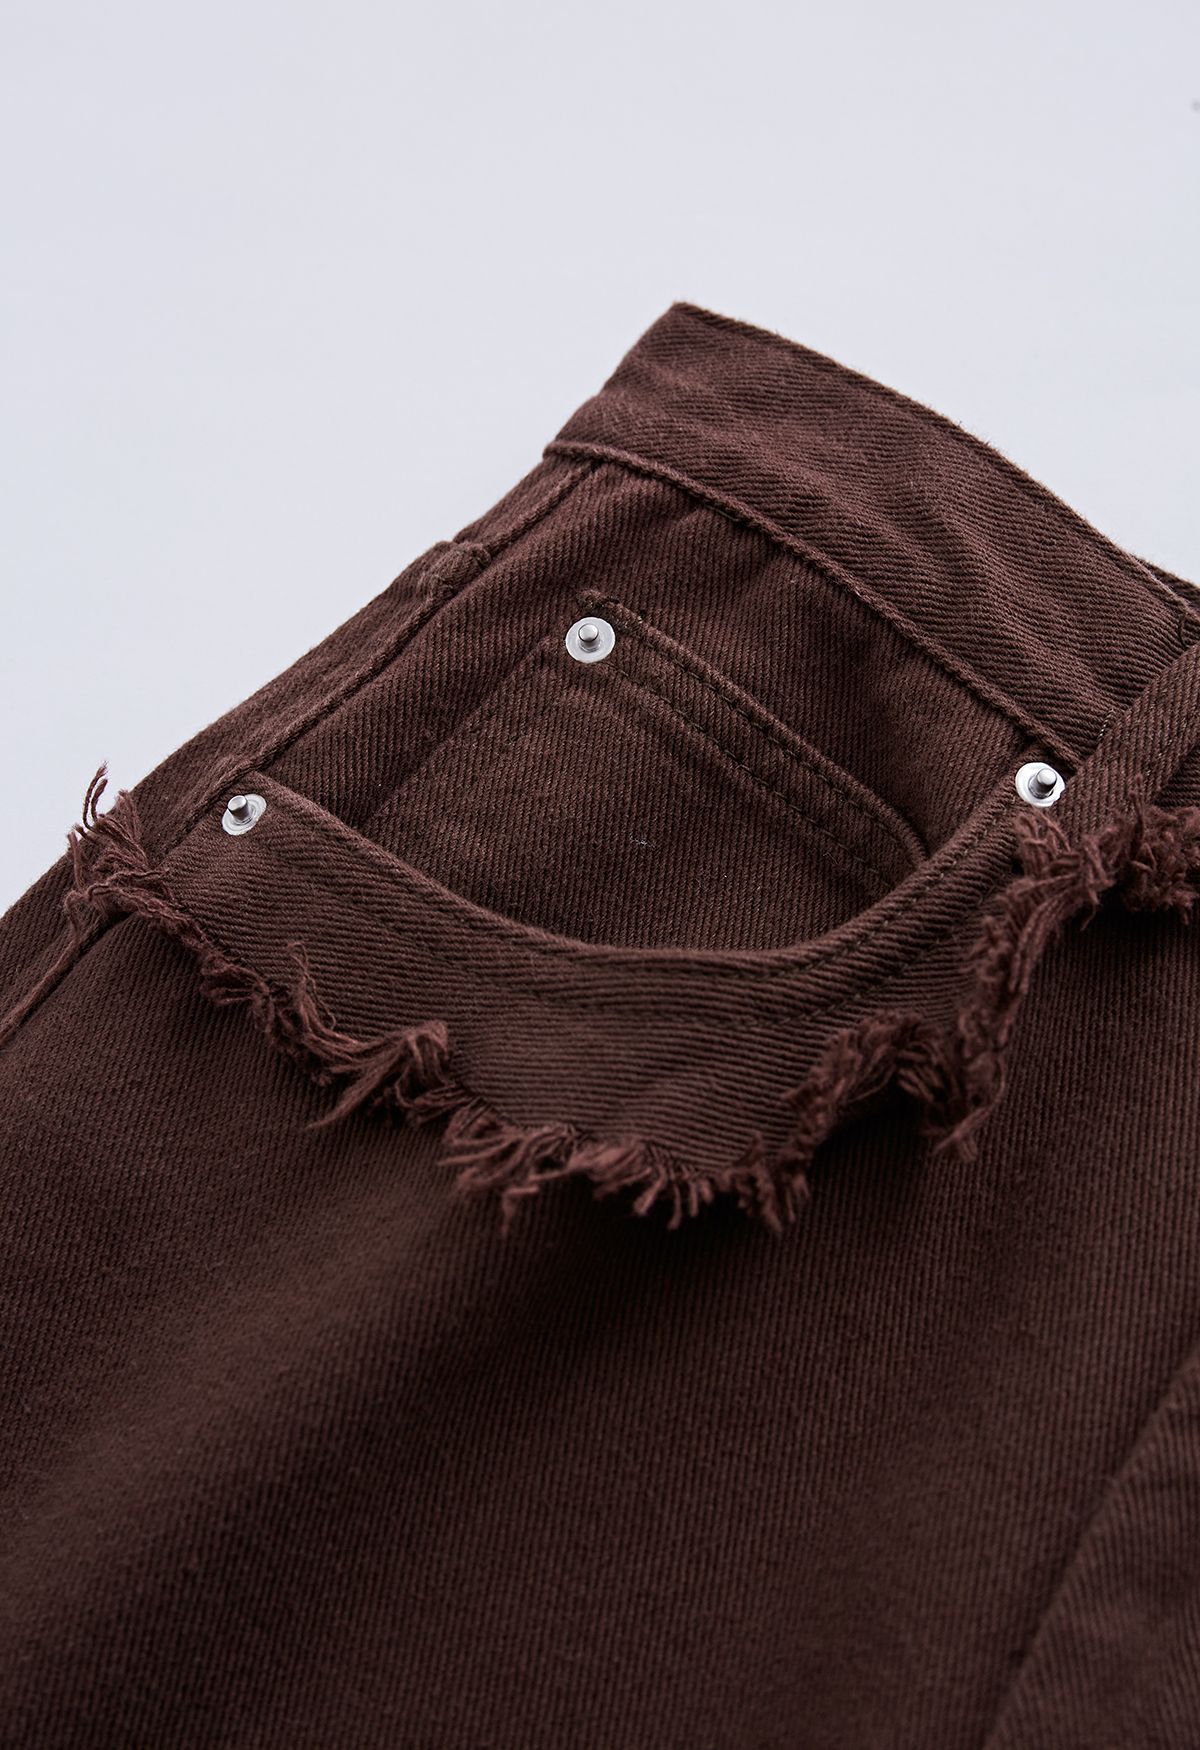 Jeans Flare de bolso clássico com detalhe desfiado em marrom